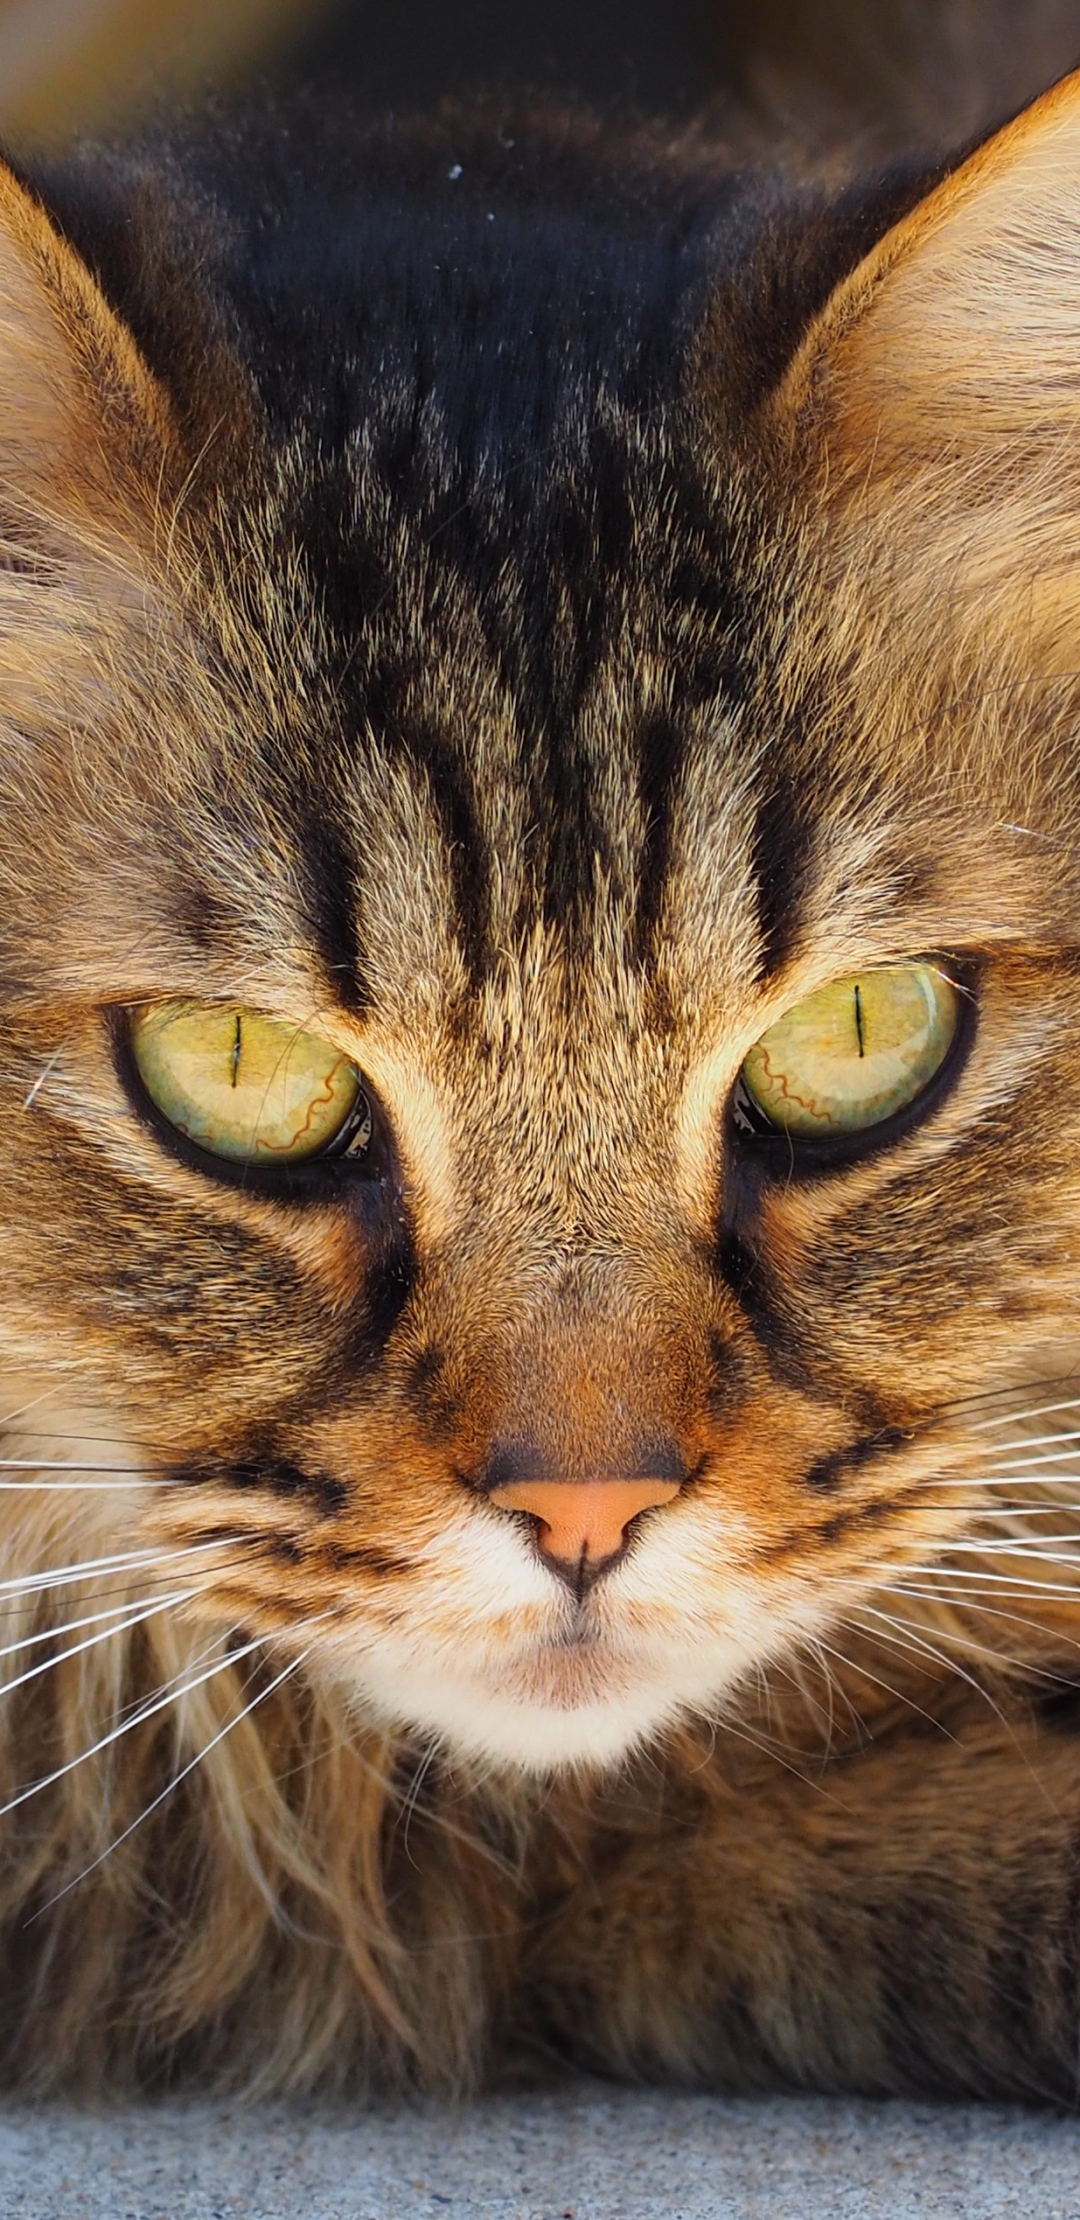 Descarga gratuita de fondo de pantalla para móvil de Animales, Gatos, Gato, Cara, Ojo.